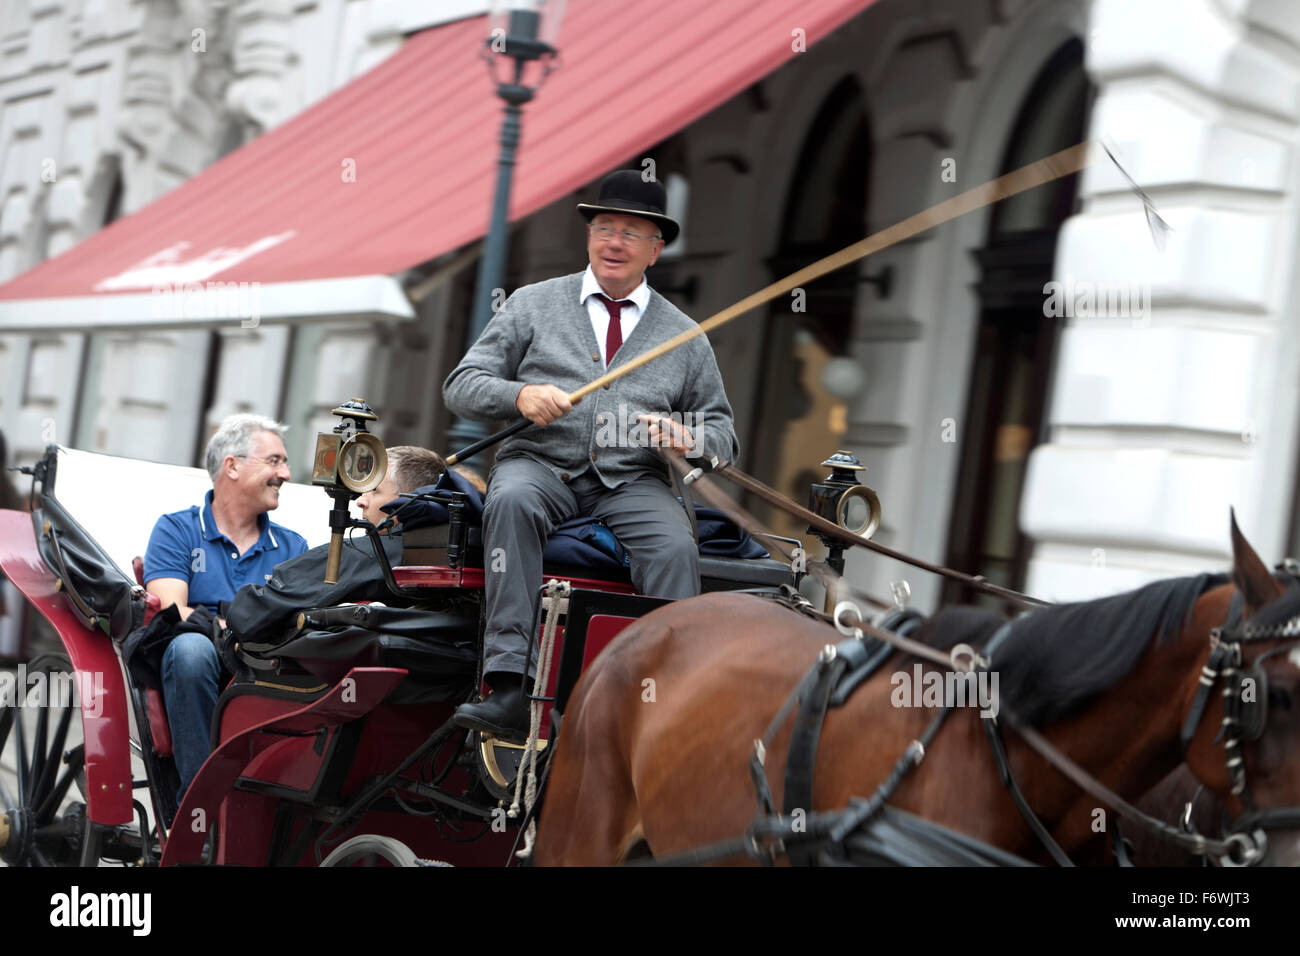 Fiaker and horse-drawn carriage on Michaelerplatz, Vienna, Austria Stock Photo